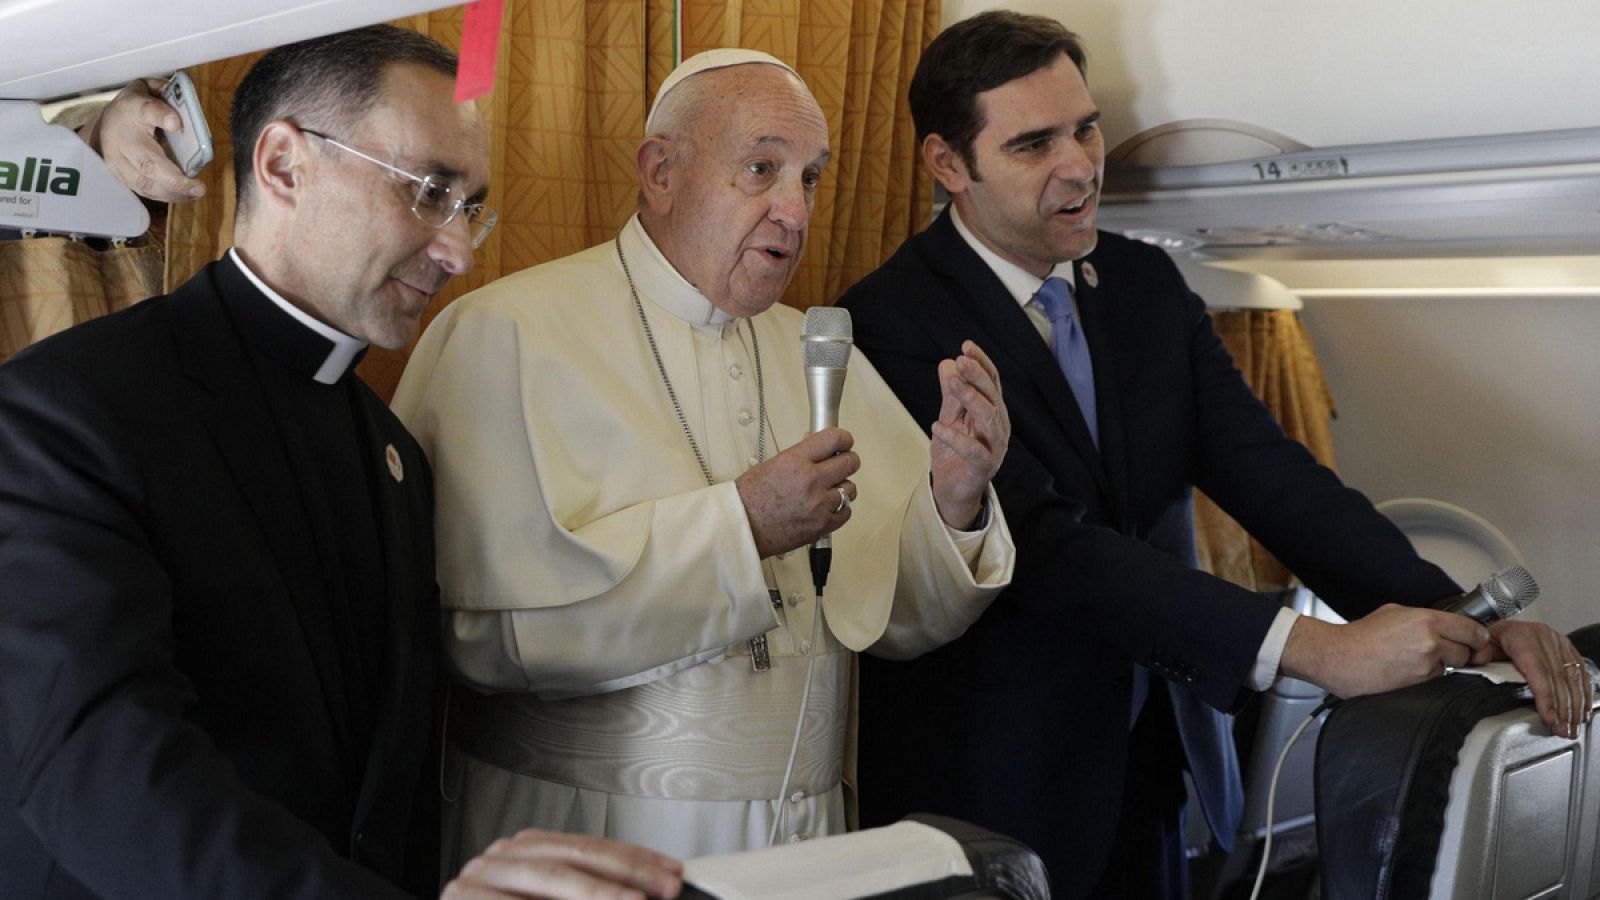 El papa responde a preguntas de los periodistas que viajan con él a Marruecos en el avión papal